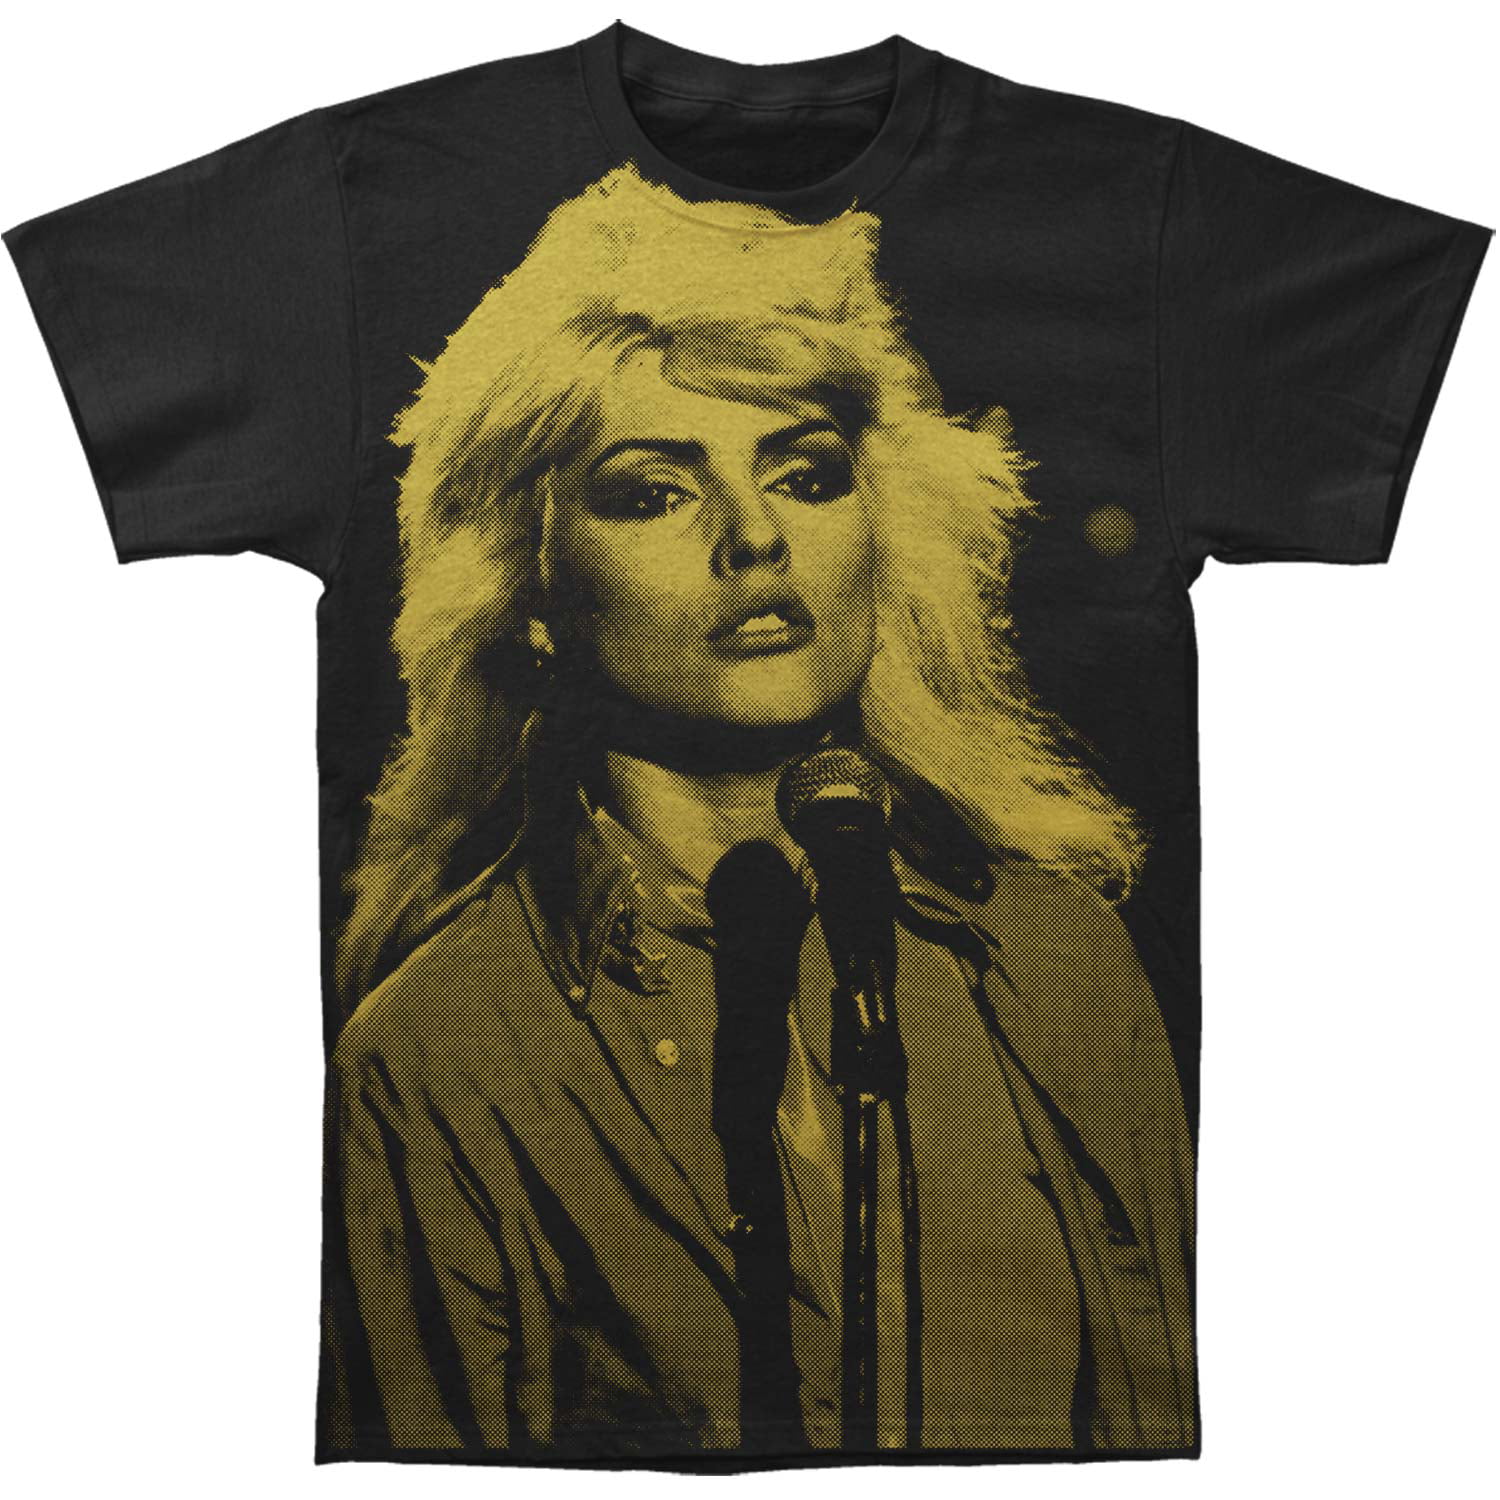 Blondie - Blondie Men's Debbie Slim Fit T-shirt Black - Walmart.com ...